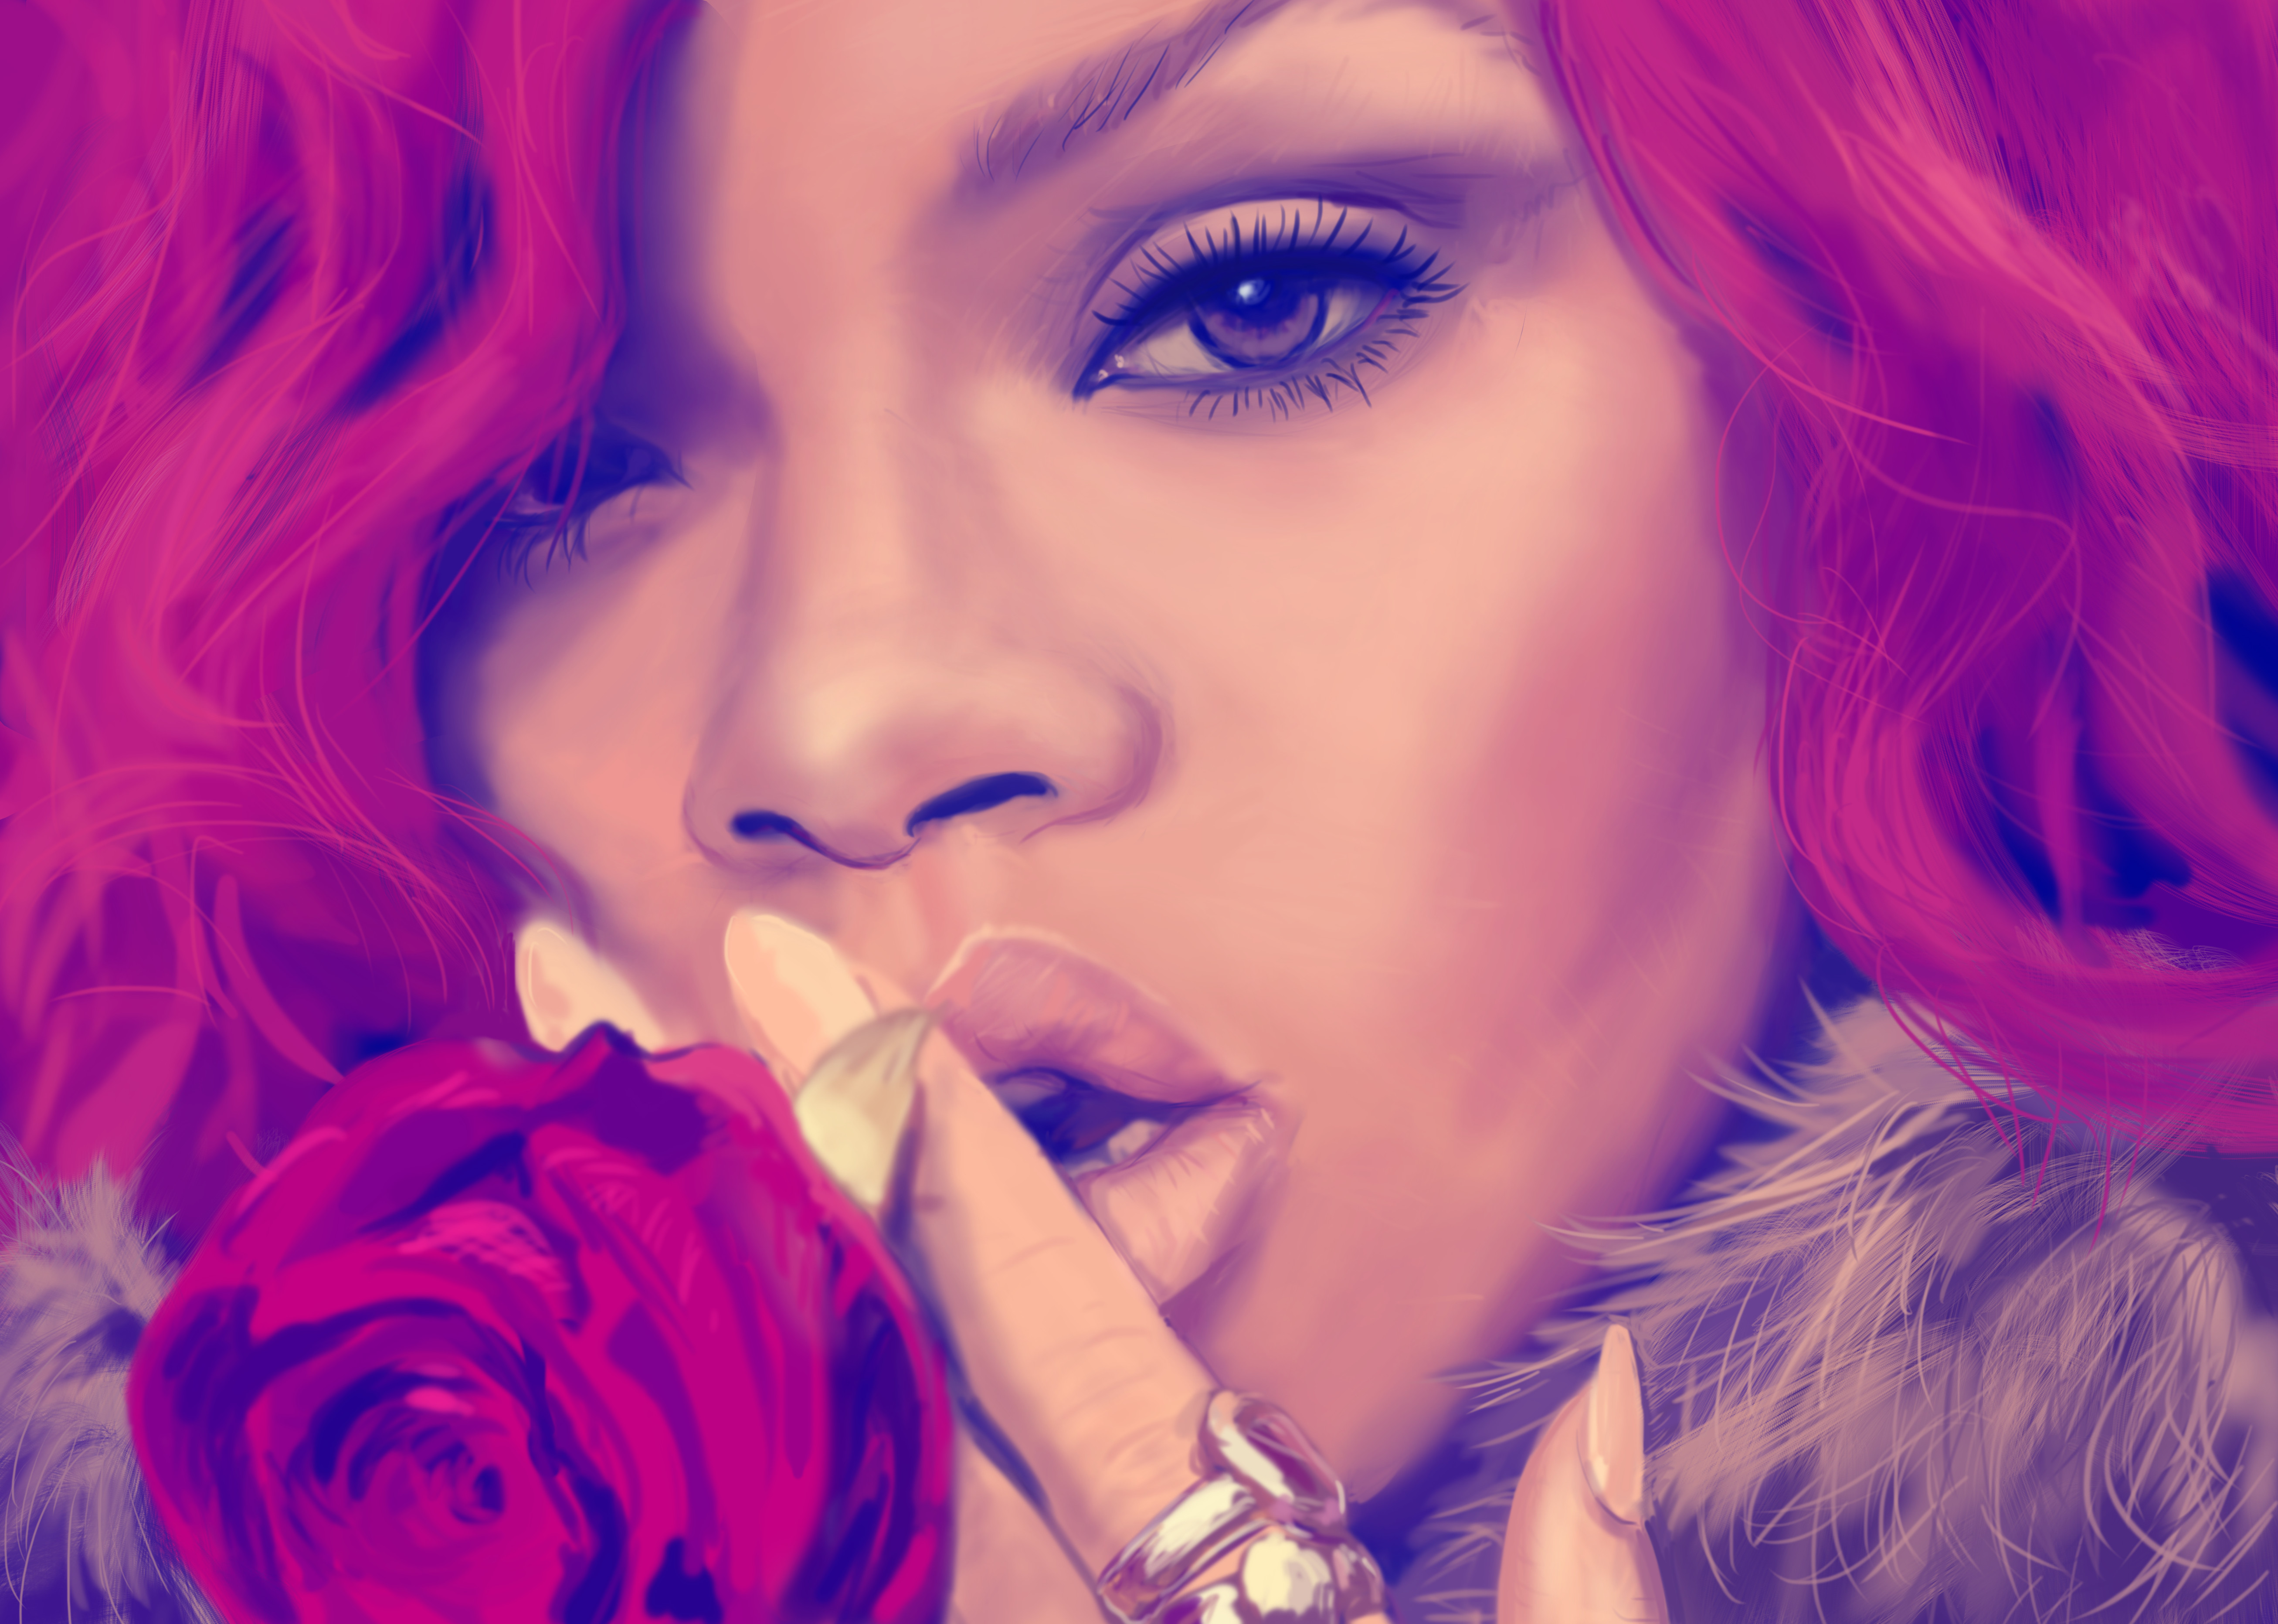 Rihanna Actress Singer Barbadian Face Painting Artistic Pink Hair 5227x3726